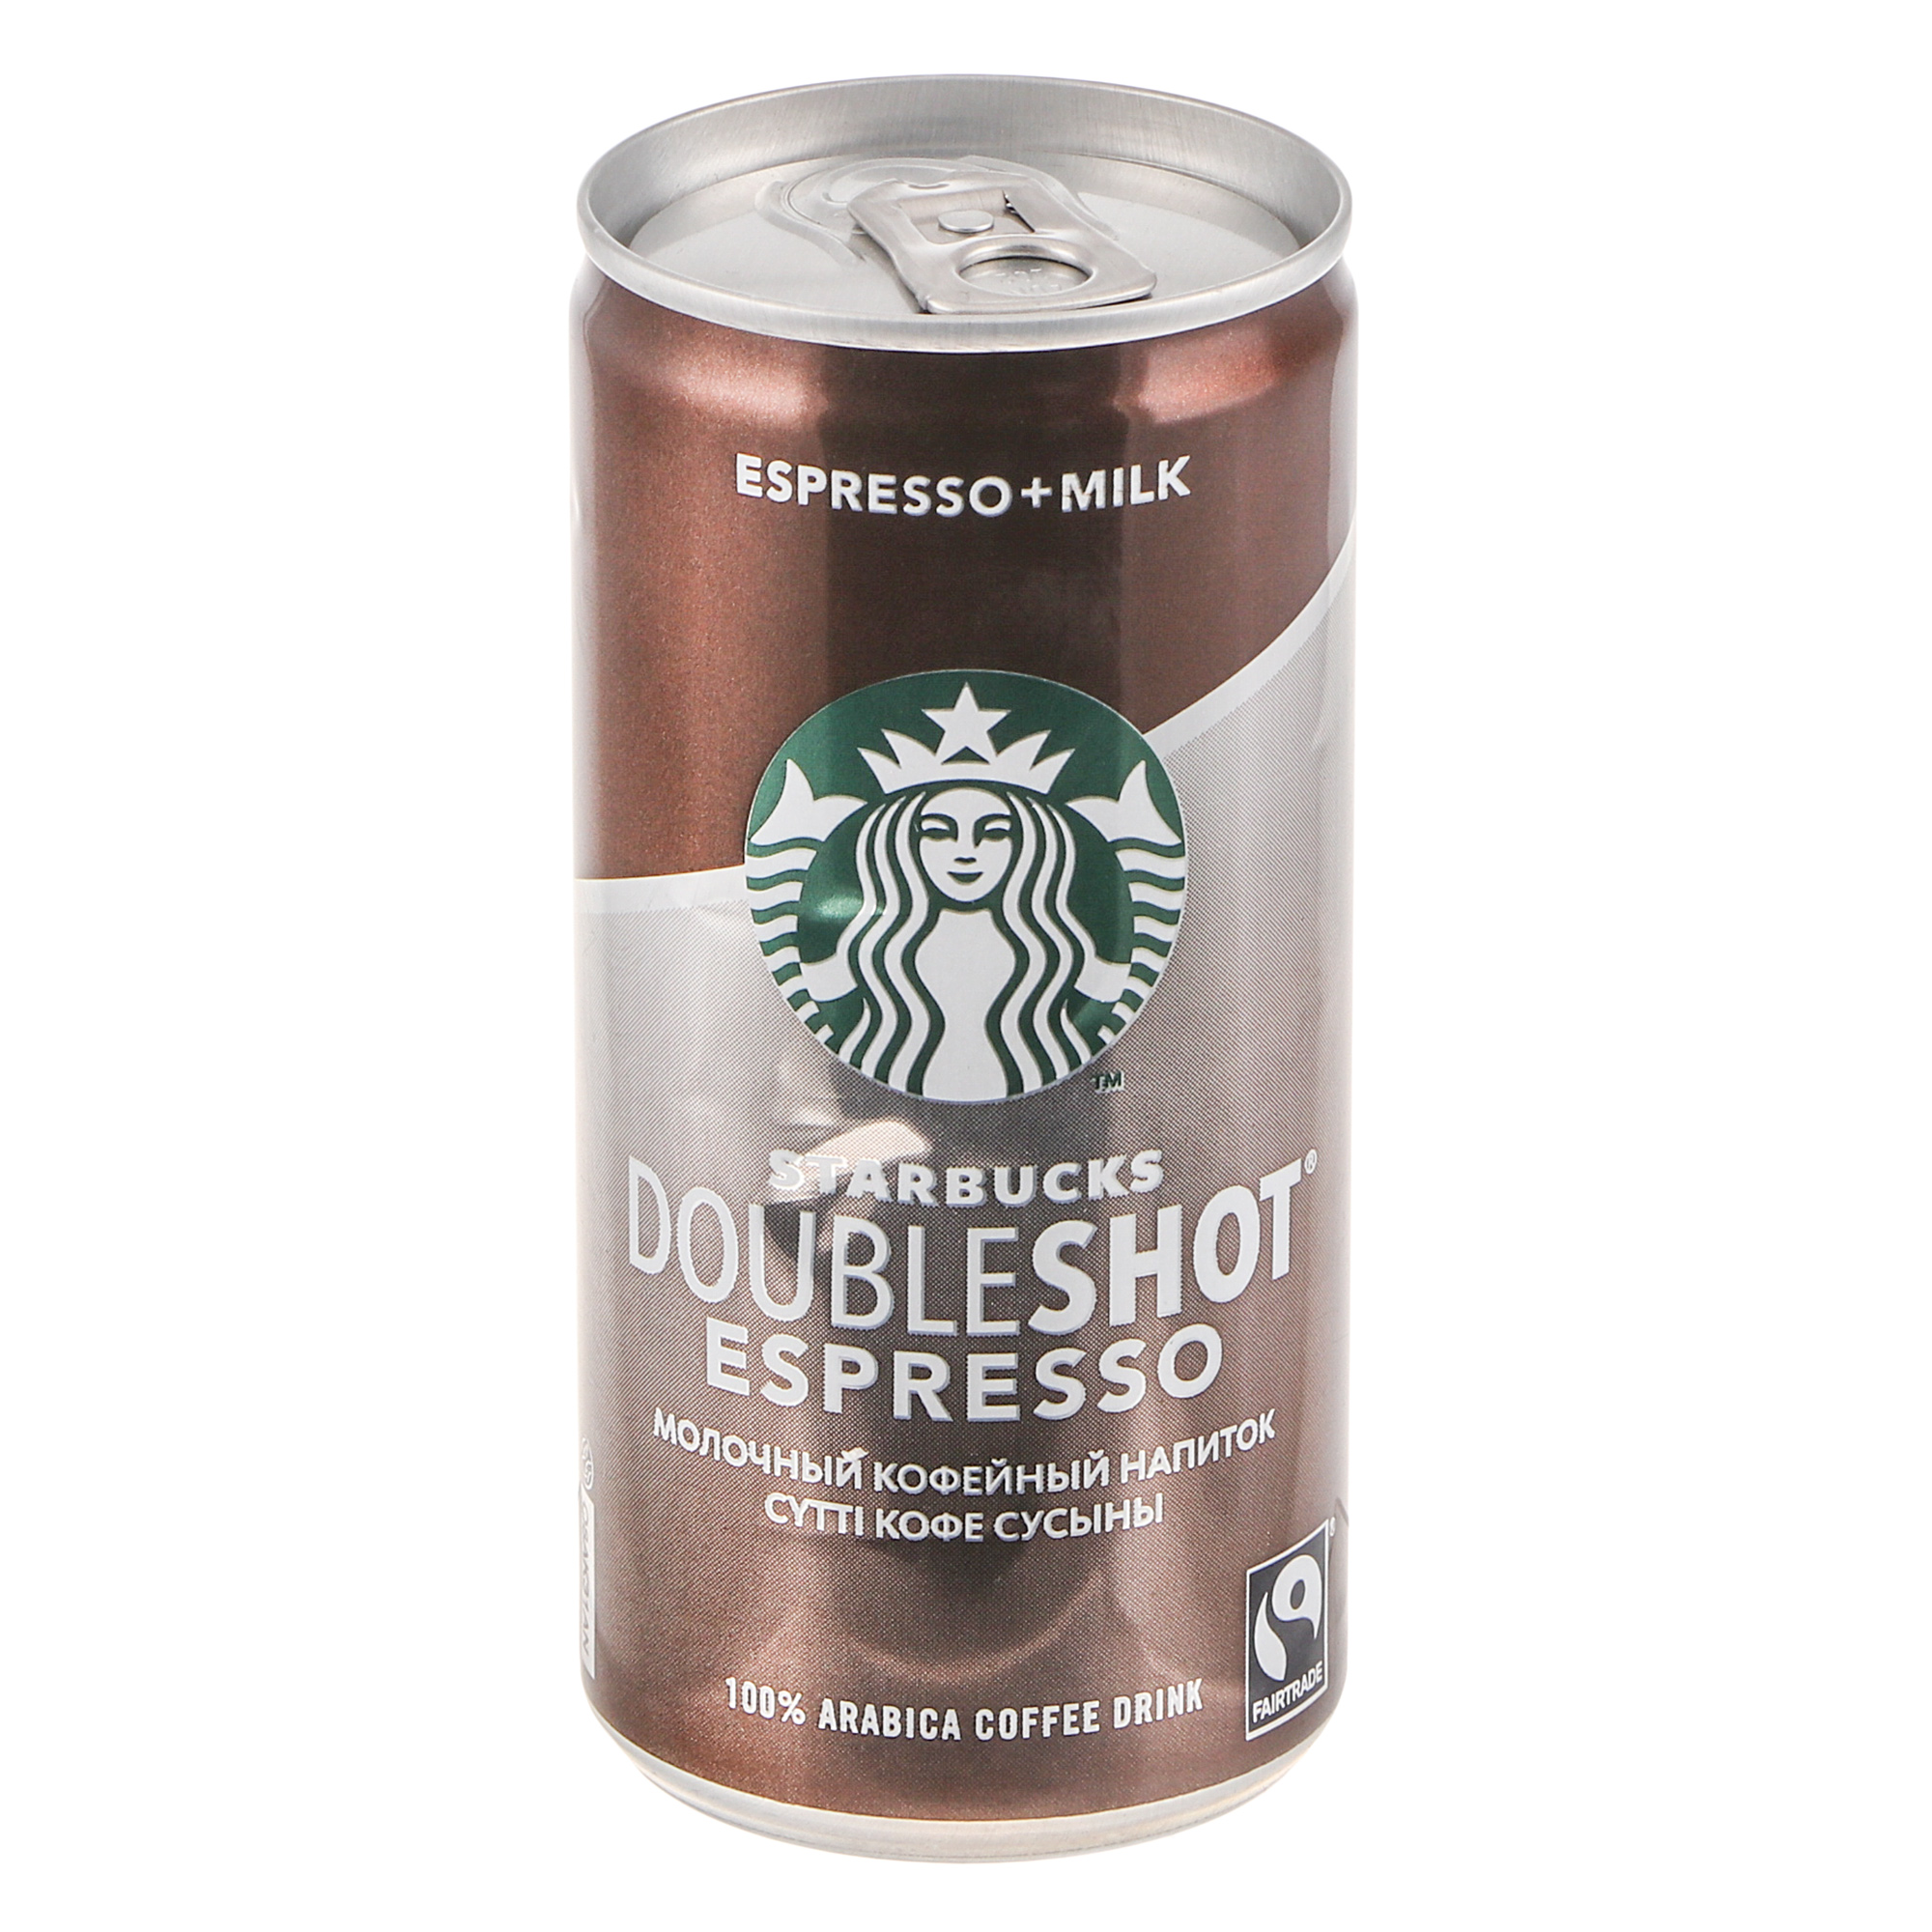 Напиток Starbucks Doubleshot Espresso молочный кофейный 0,2 л